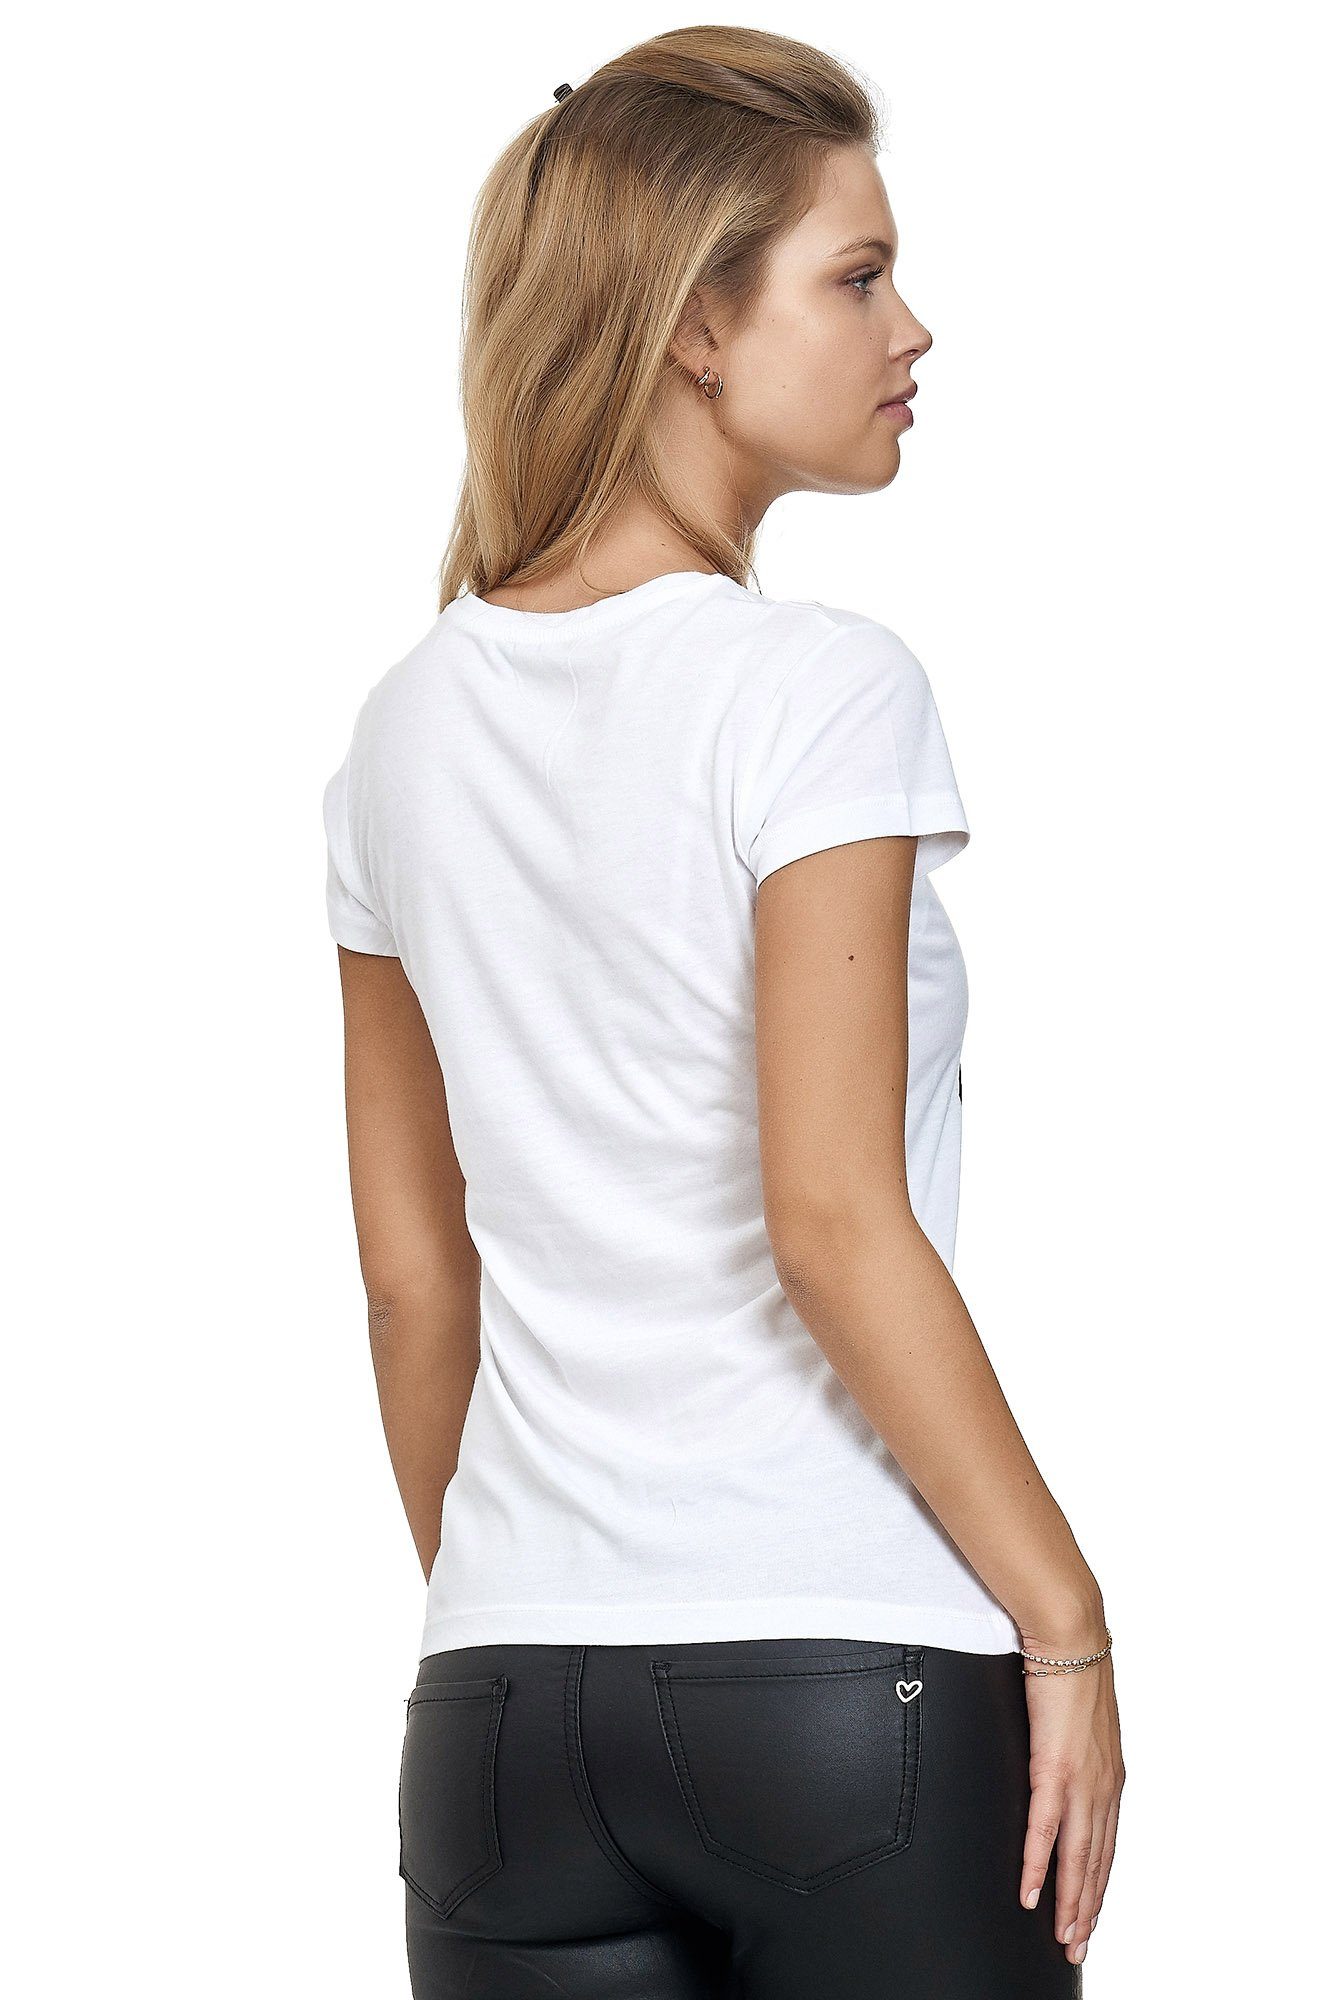 Decay mit T-Shirt glänzendem weiß Frontprint